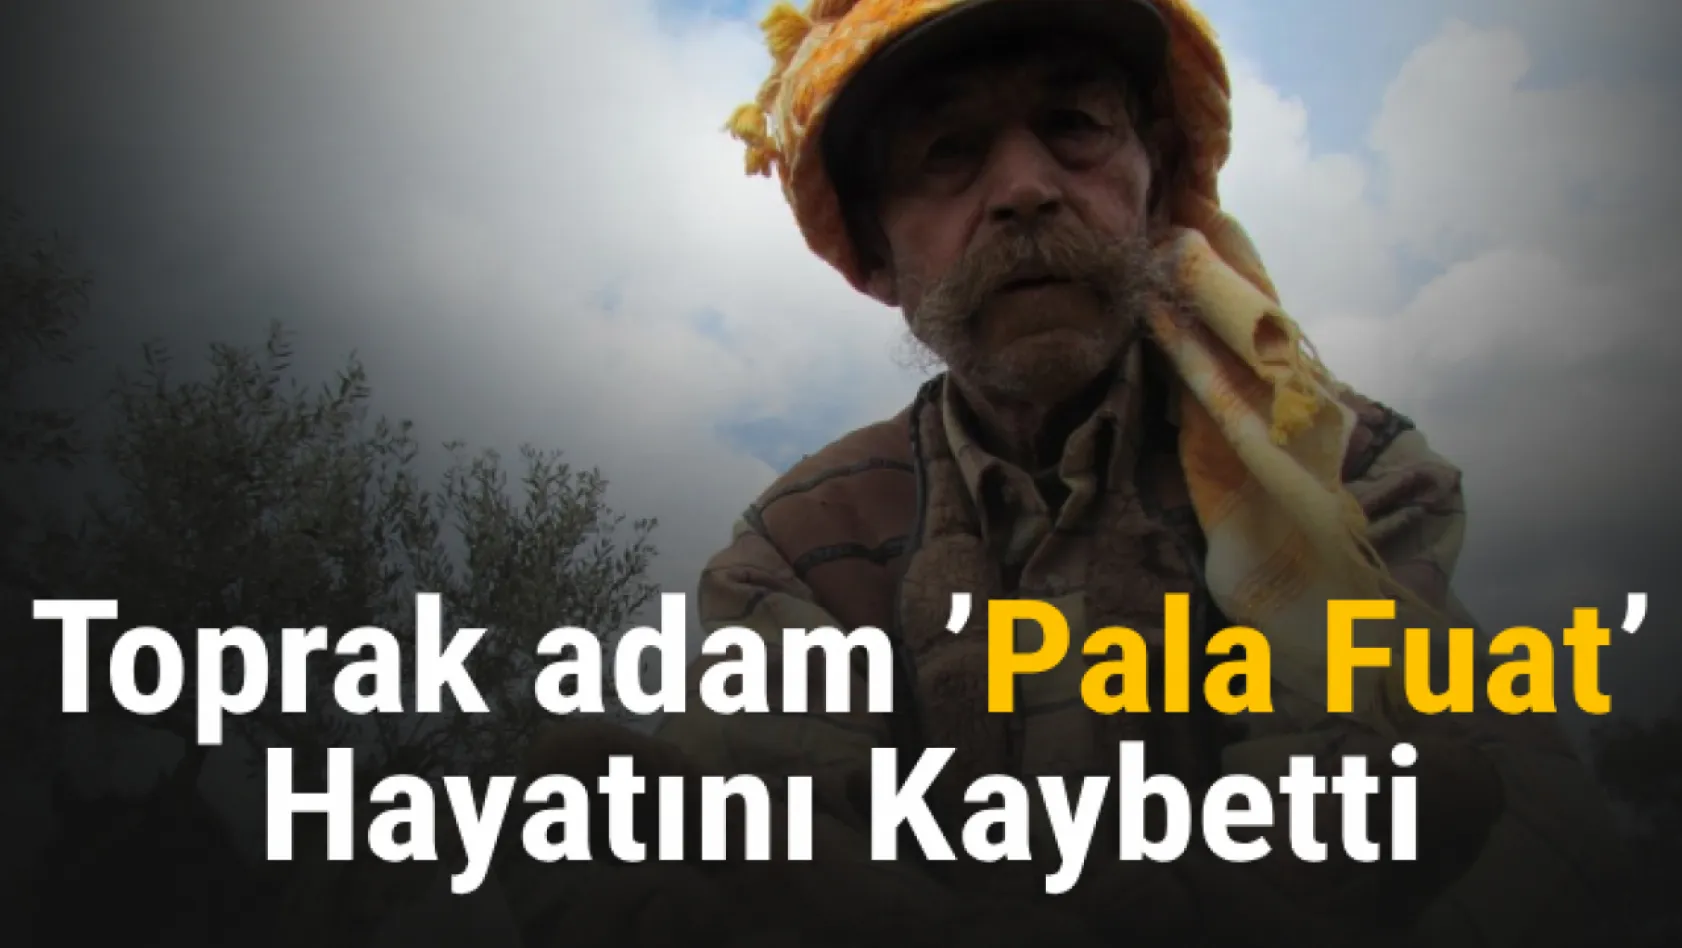 Toprak adam 'Pala Fuat' hayatını kaybetti